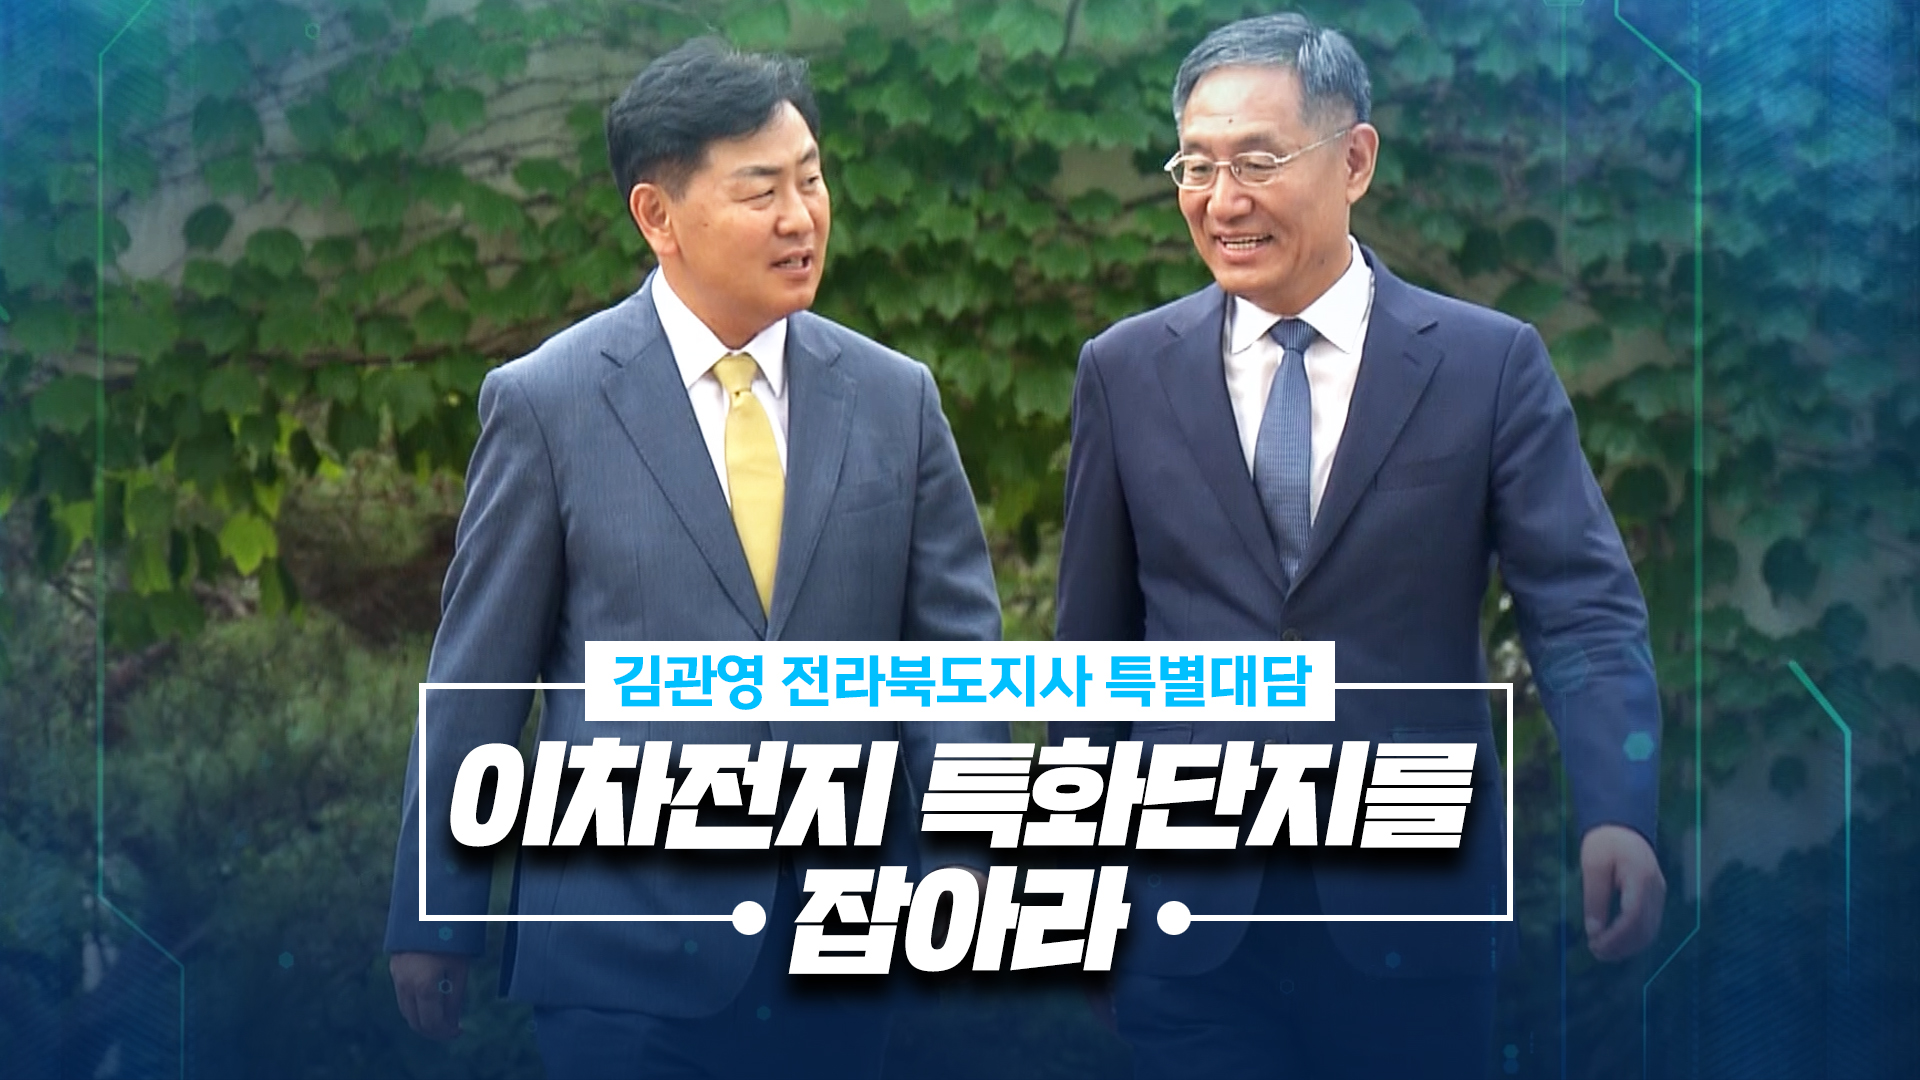 김관영 지사 특별대담 - 이차전지 특화단지를 잡아라